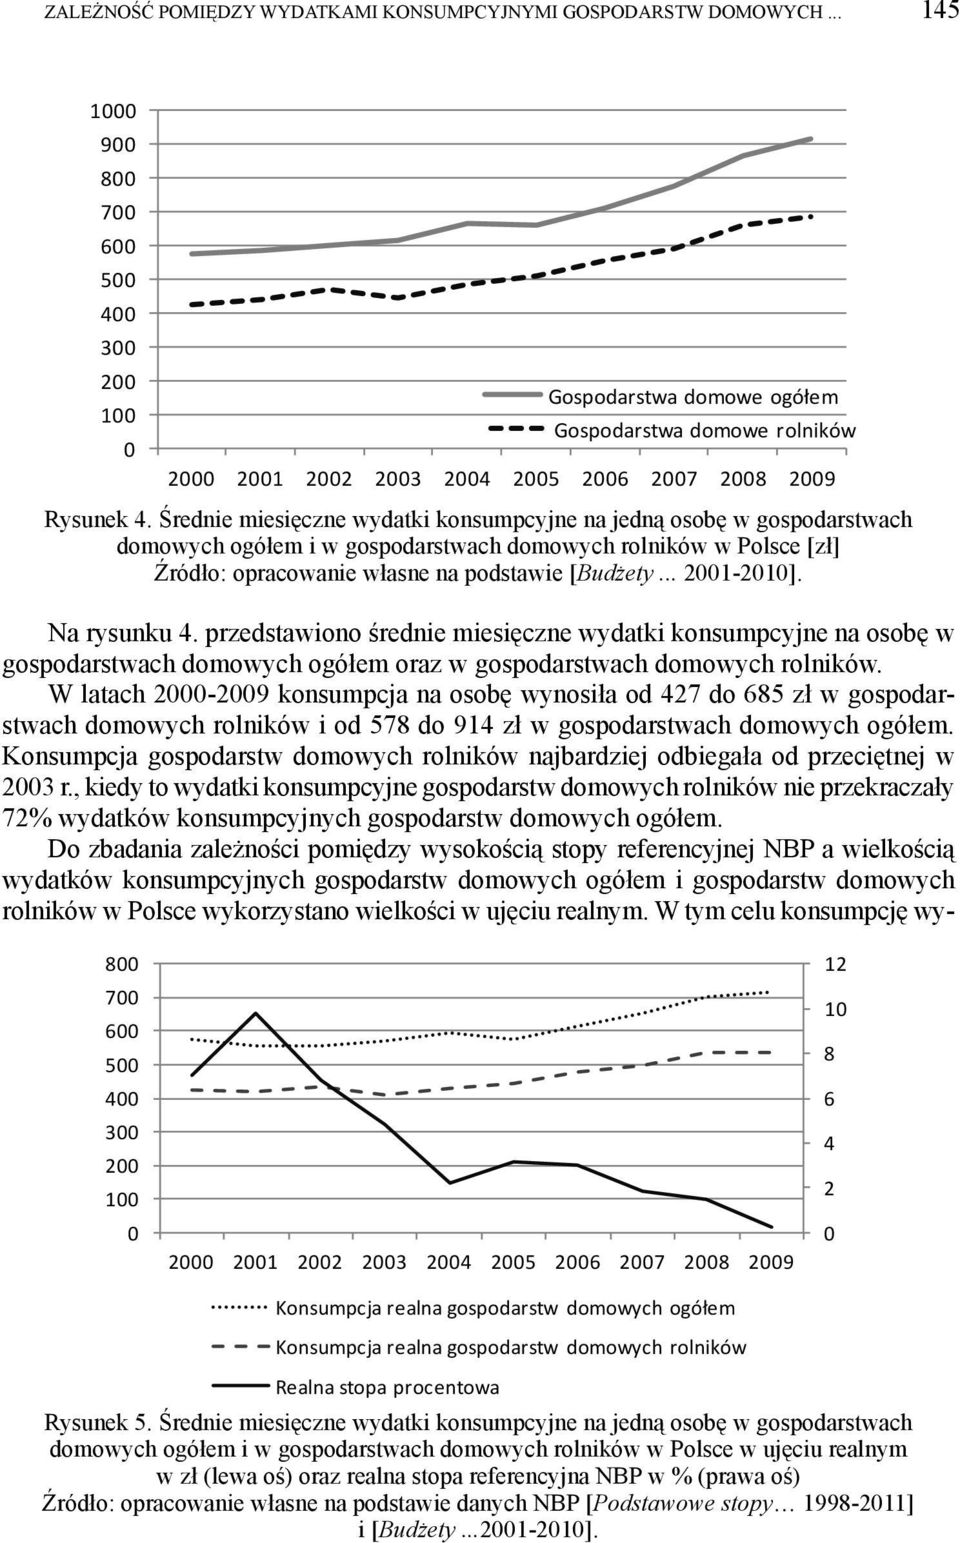 Średnie miesięczne wydatki konsumpcyjne na jedną osobę w gospodarstwach domowych ogółem i w gospodarstwach domowych rolników w Polsce [zł] Źródło: opracowanie własne na podstawie [Budżety... 2001-2010].